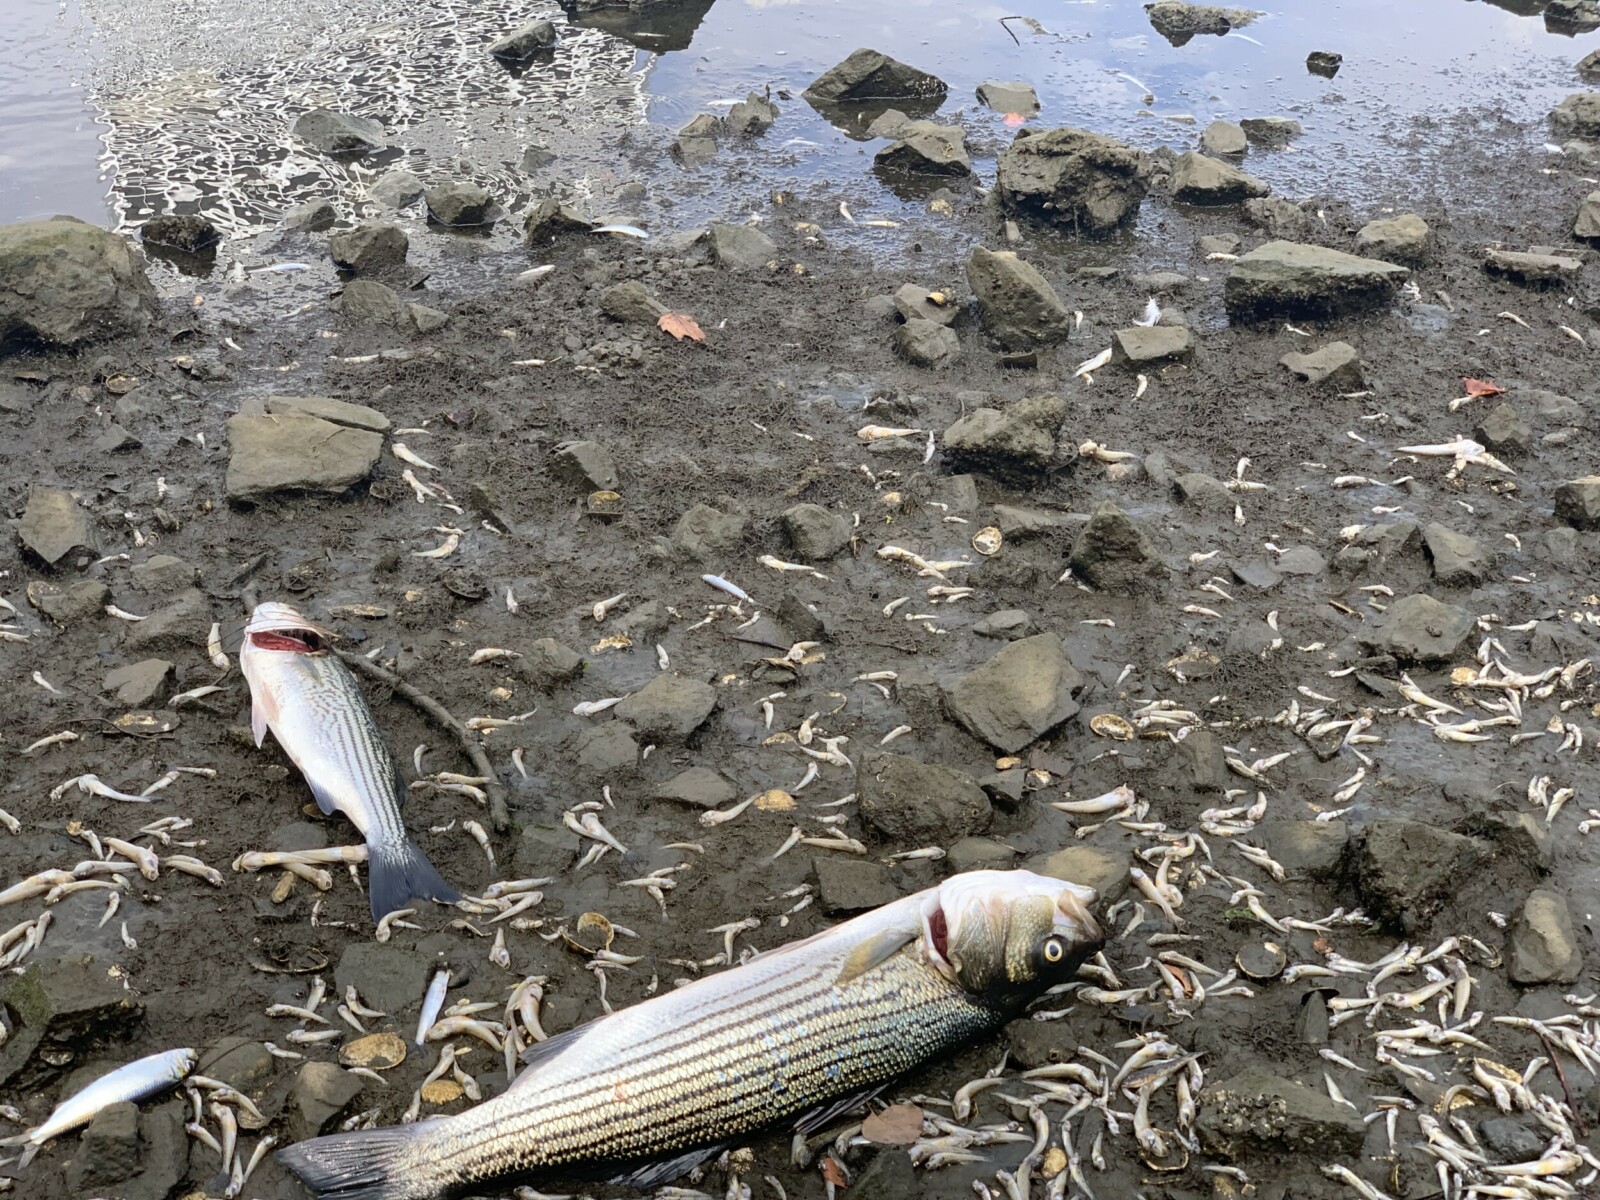 Dead Fish at Lake Merritt